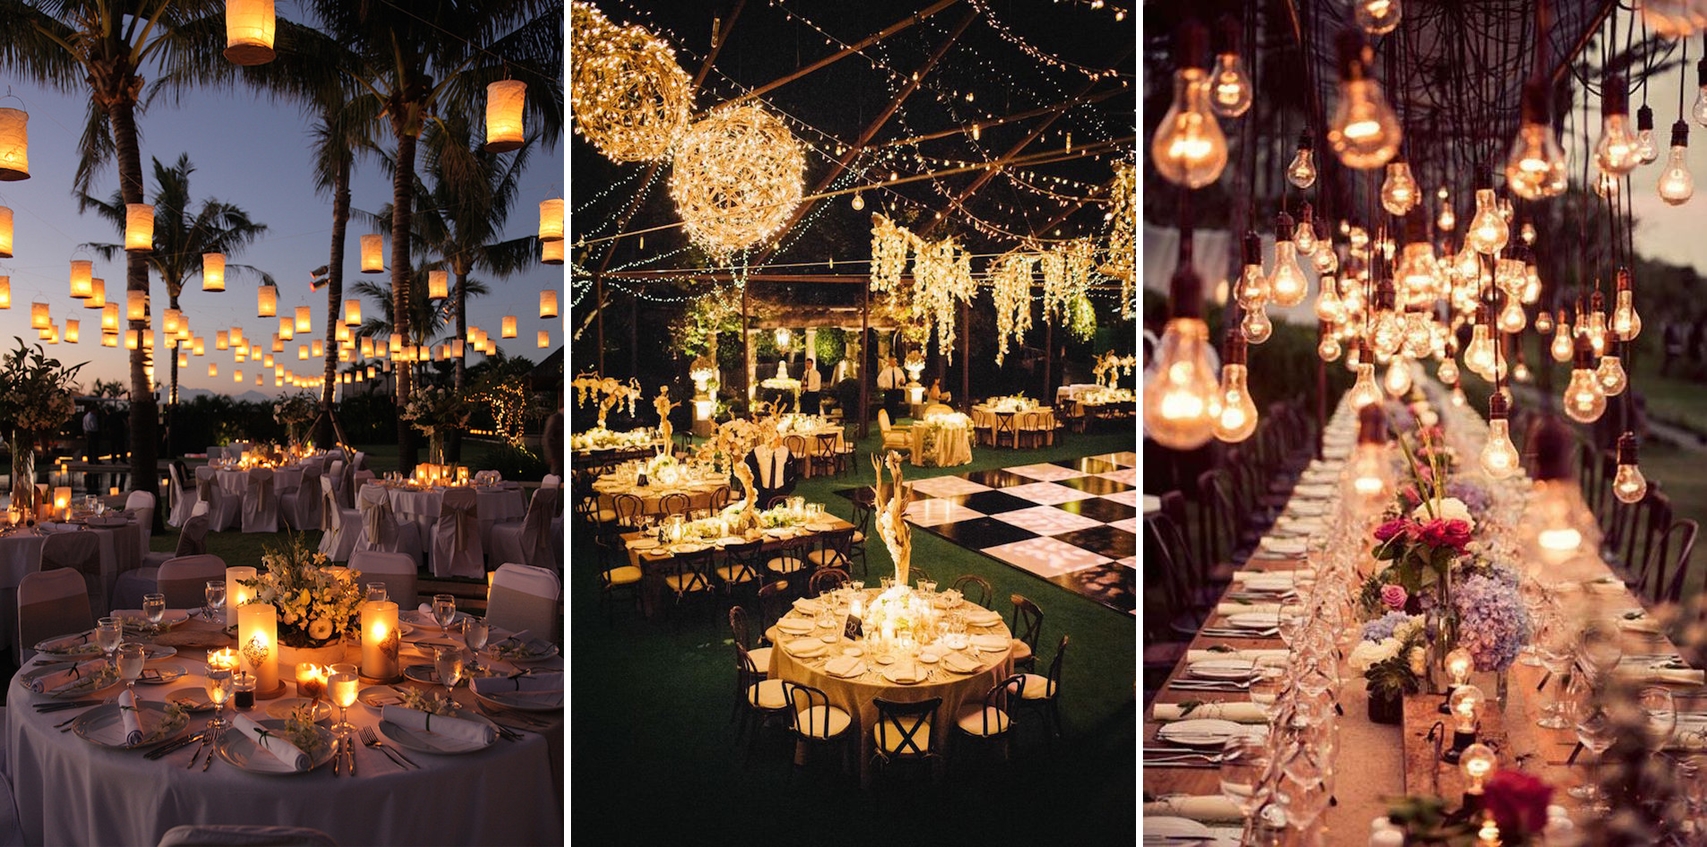 Lumini decorative pentru nuntile anului 2016